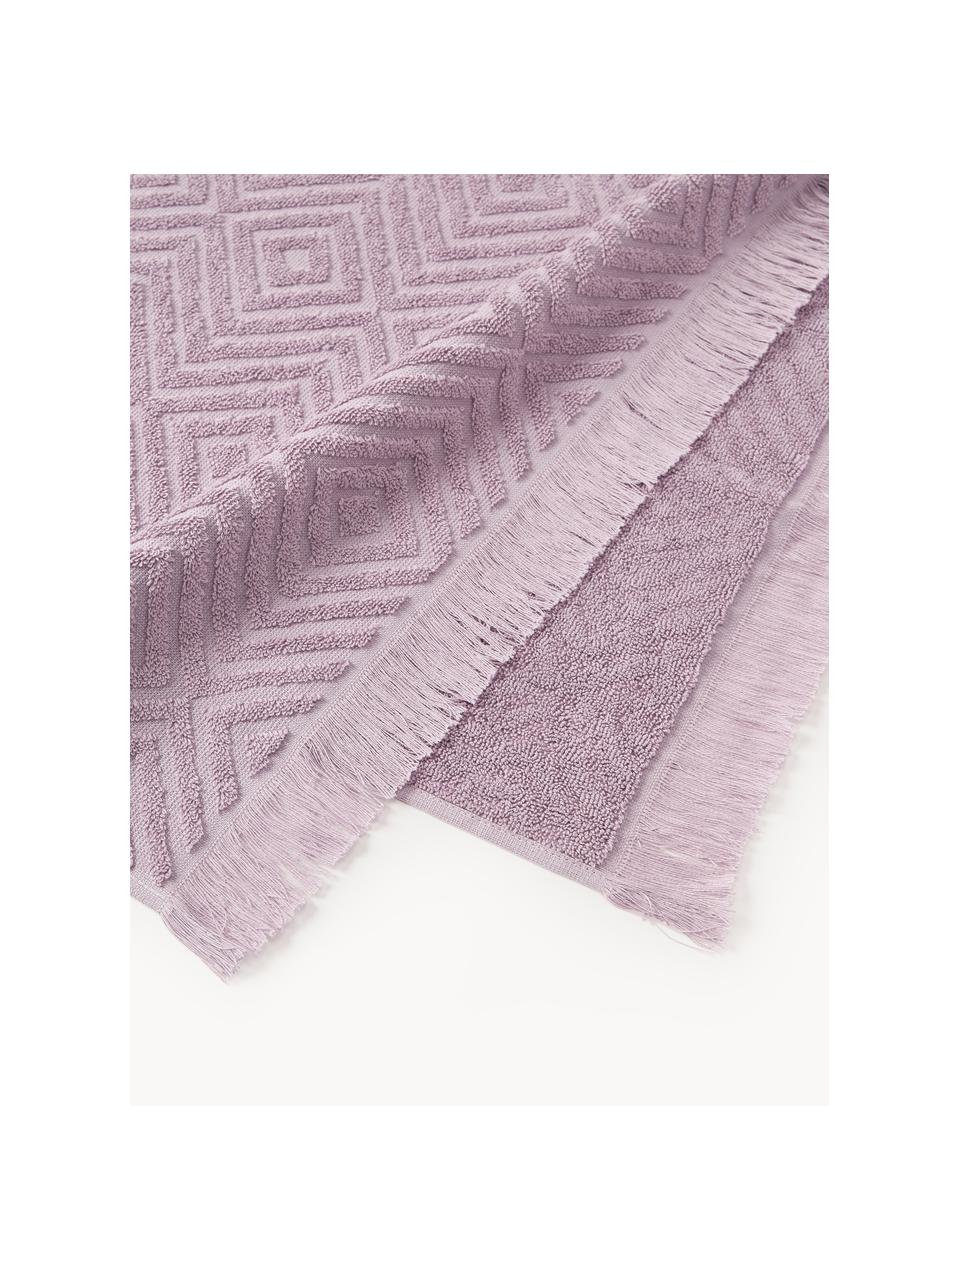 Handtuch-Set Jacqui mit Hoch-Tief-Muster, in verschiedenen Setgrößen, Lavendel, 3er-Set (Gästehandtuch, Handtuch & Duschtuch)